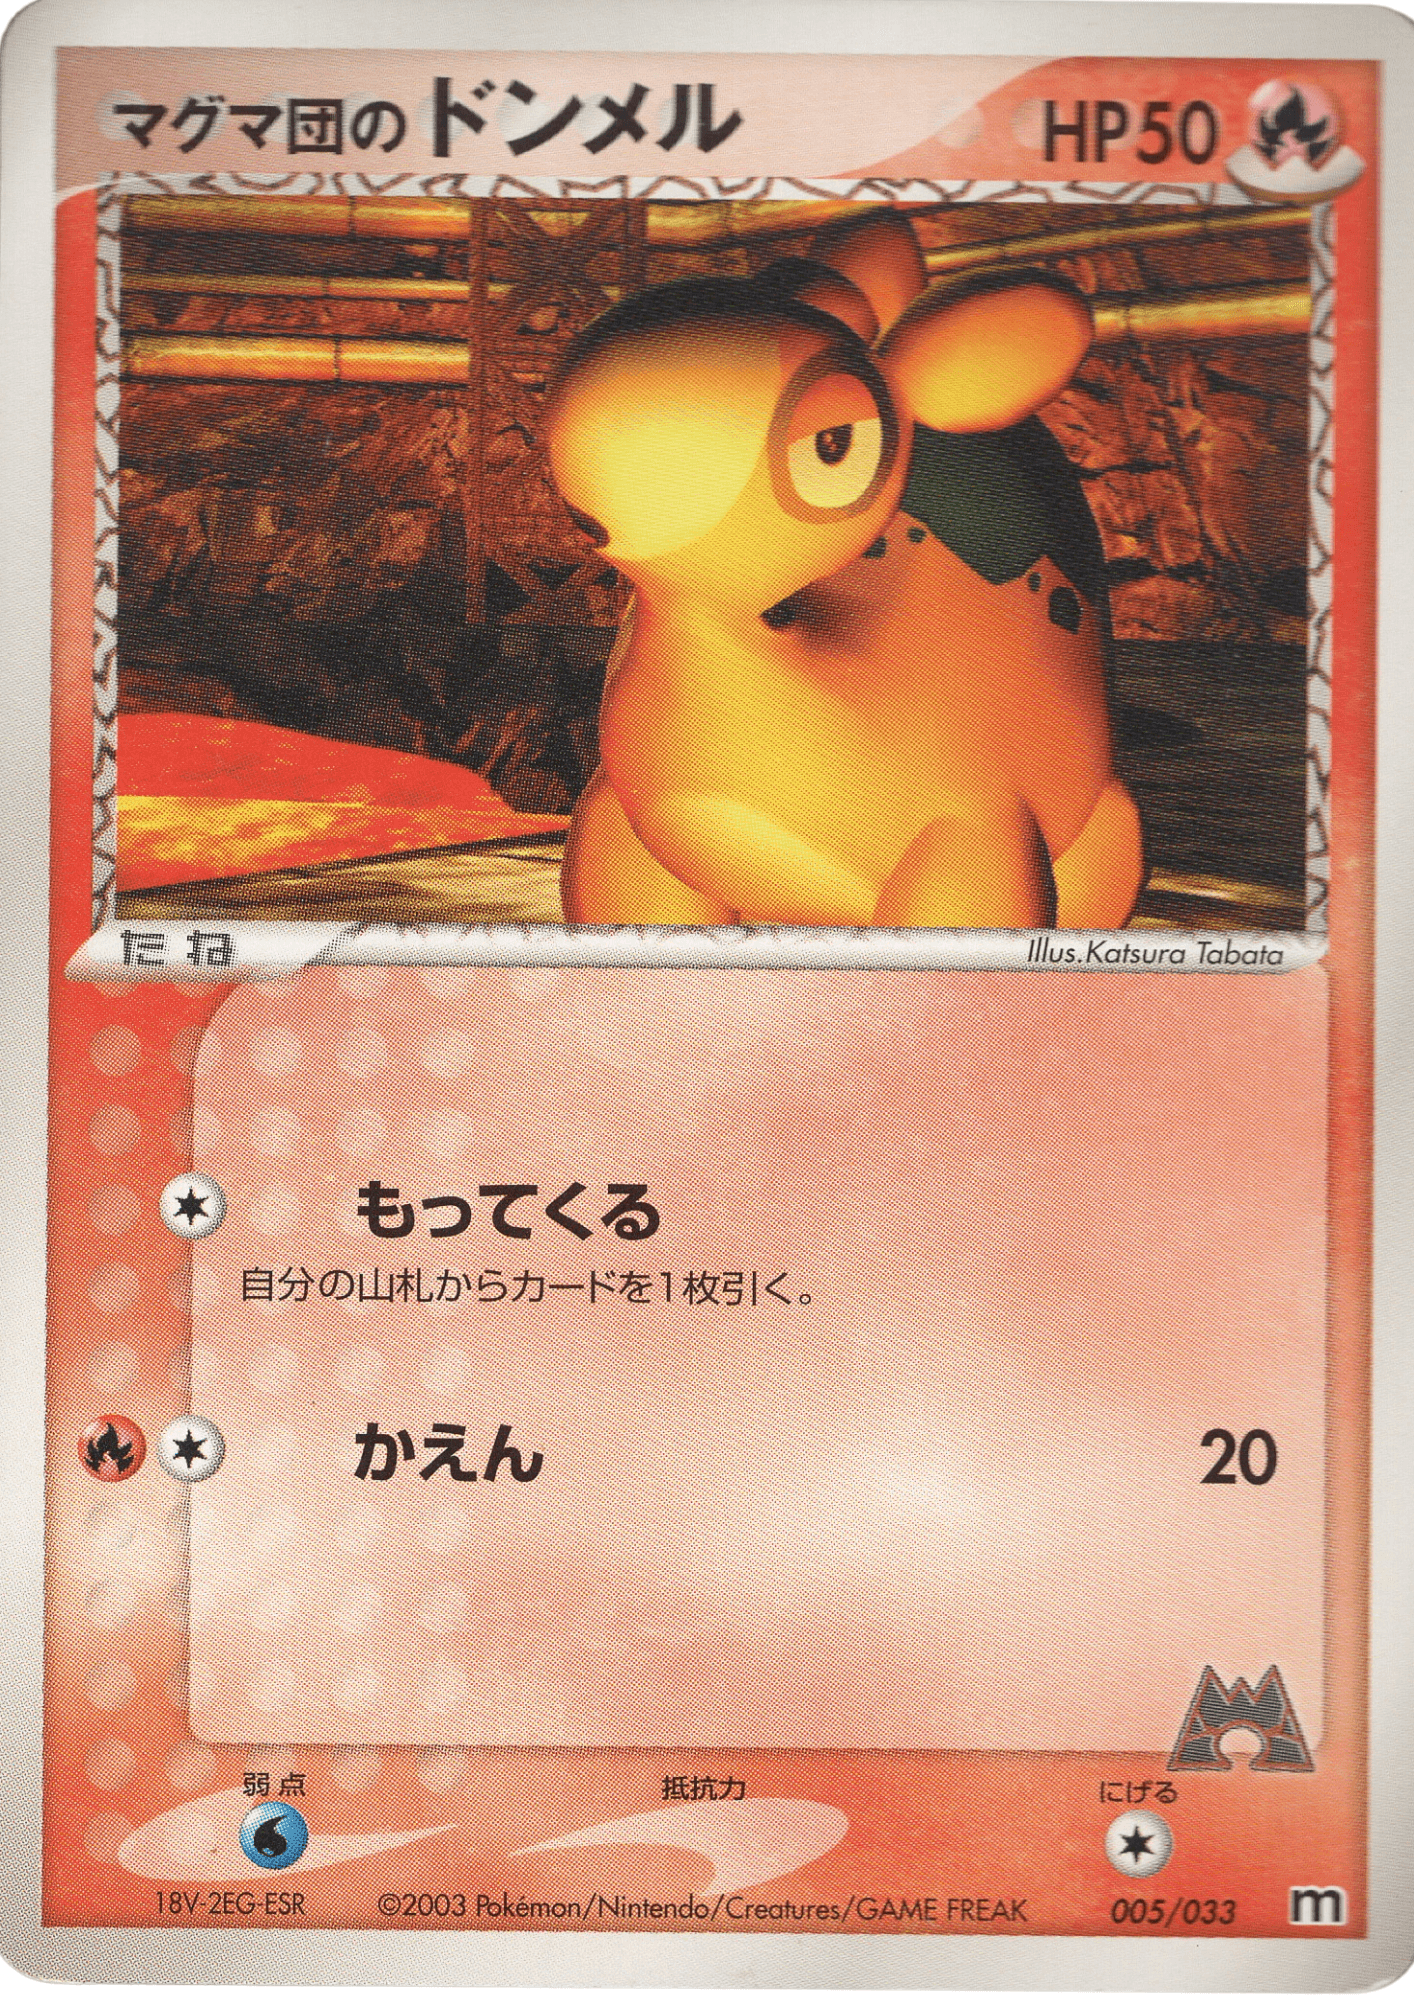 購入日本Pokemoncard ADV Team Magma vs Team Aqua boosterbox 1ed sealed ポケモンカードADV 拡張パックボックスex1 マグマVSアクア ふたつの野望 その他